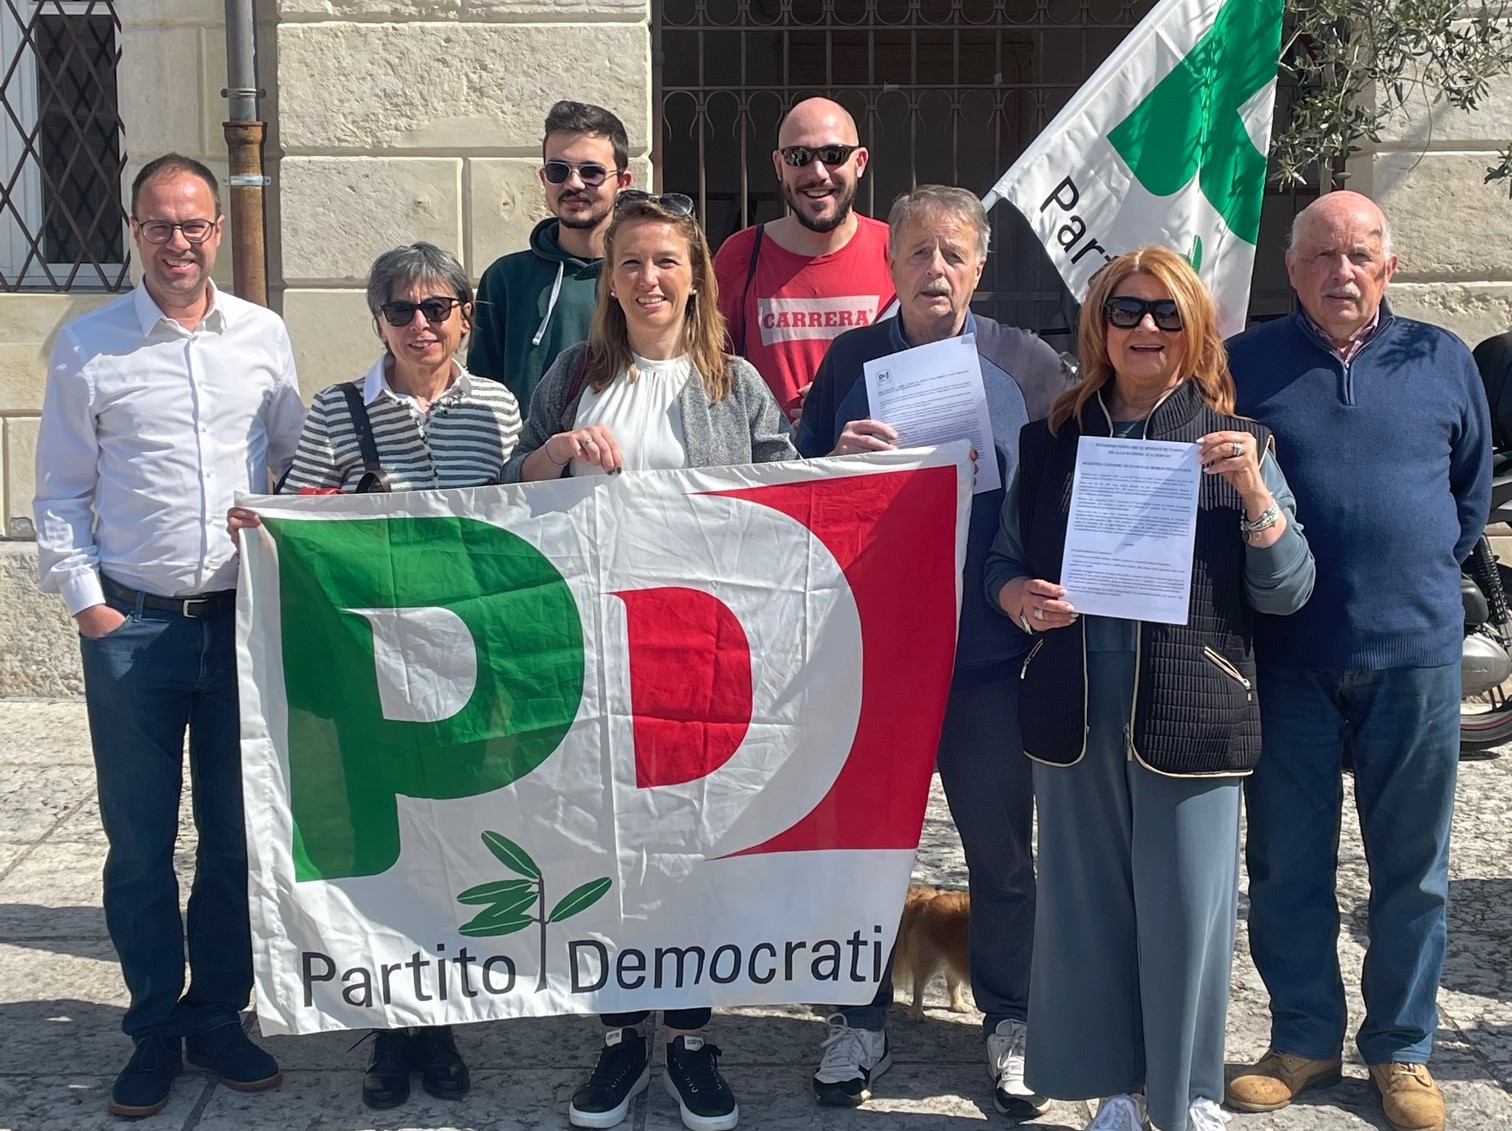 Partito Democratico, una petizione a Sboarina per fermare Borgo degli Ulivi a Quinzano